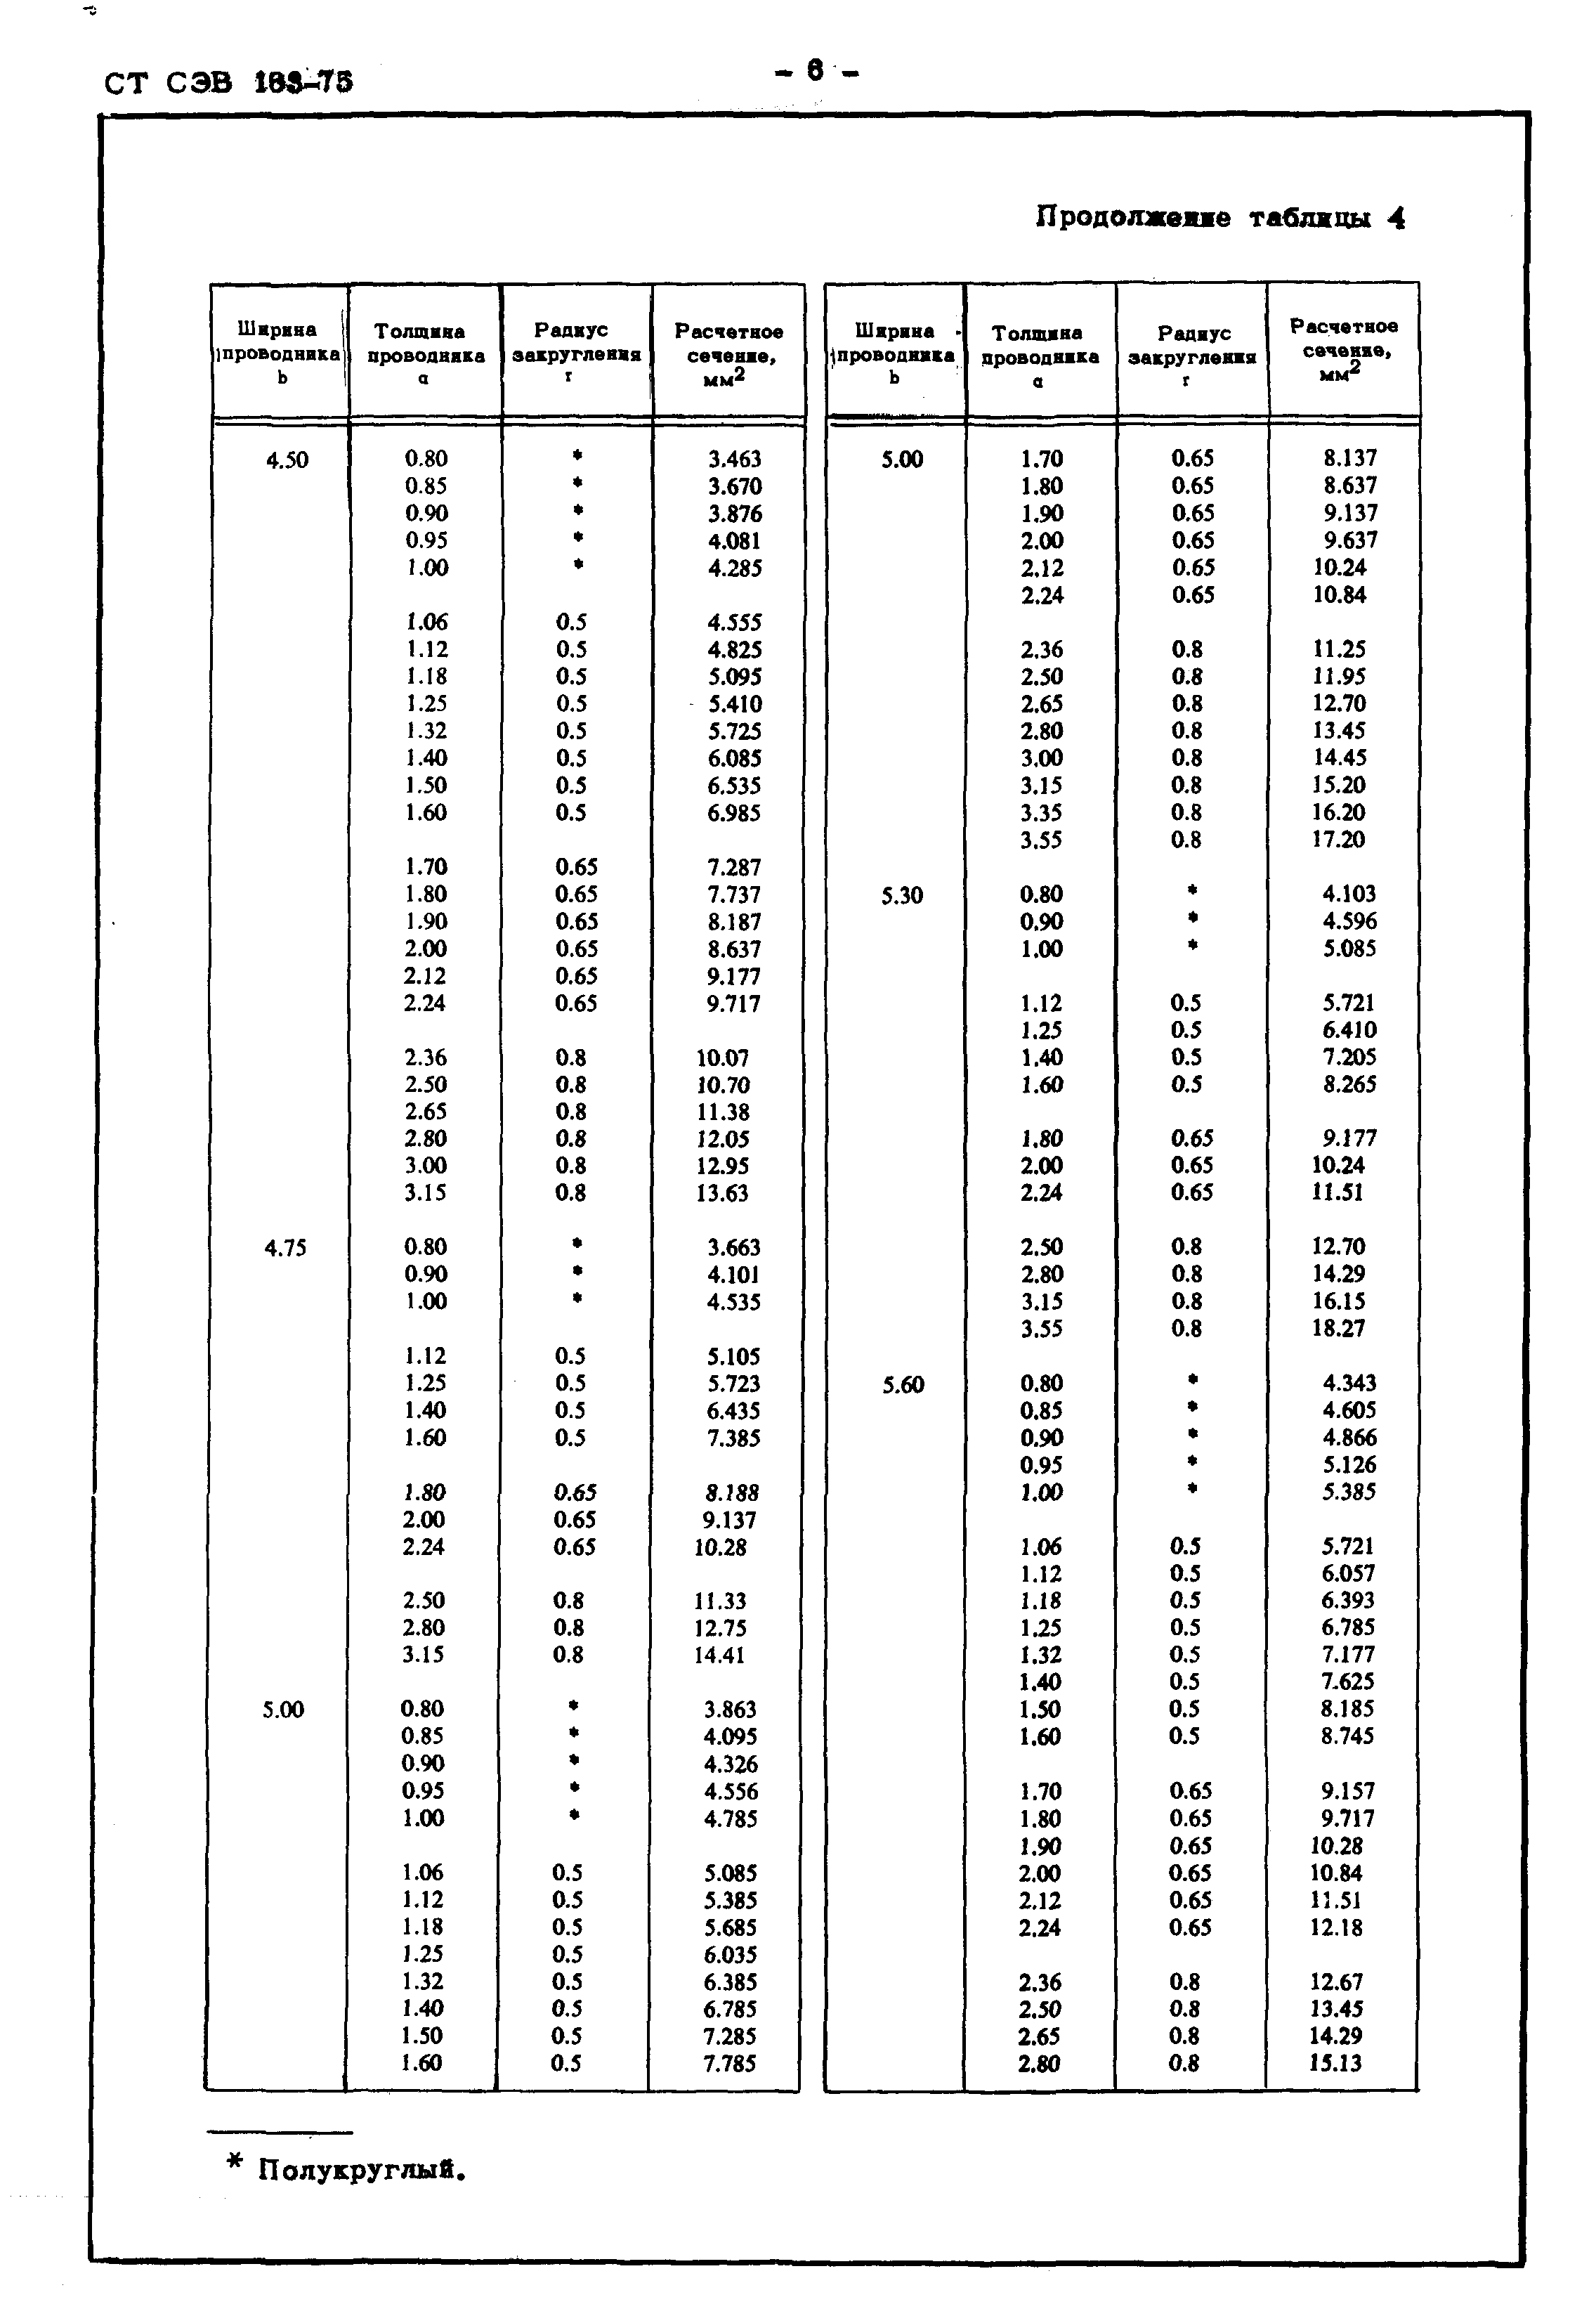 СТ СЭВ 163-75